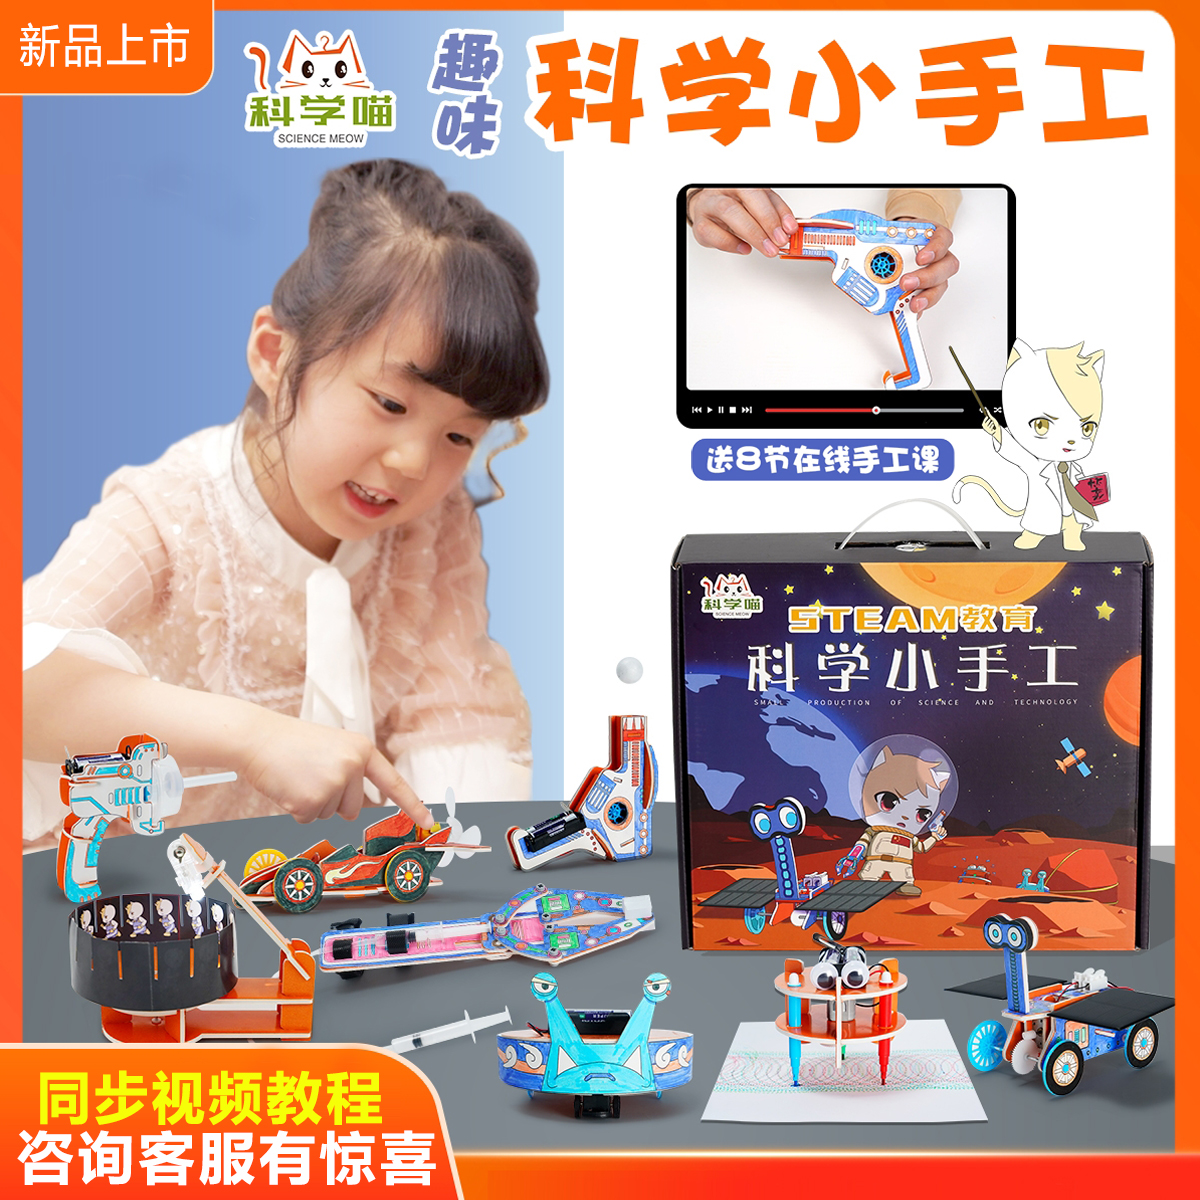 科学喵小手工儿童科技小制作益智实验玩具套装幼儿园过年不打烊